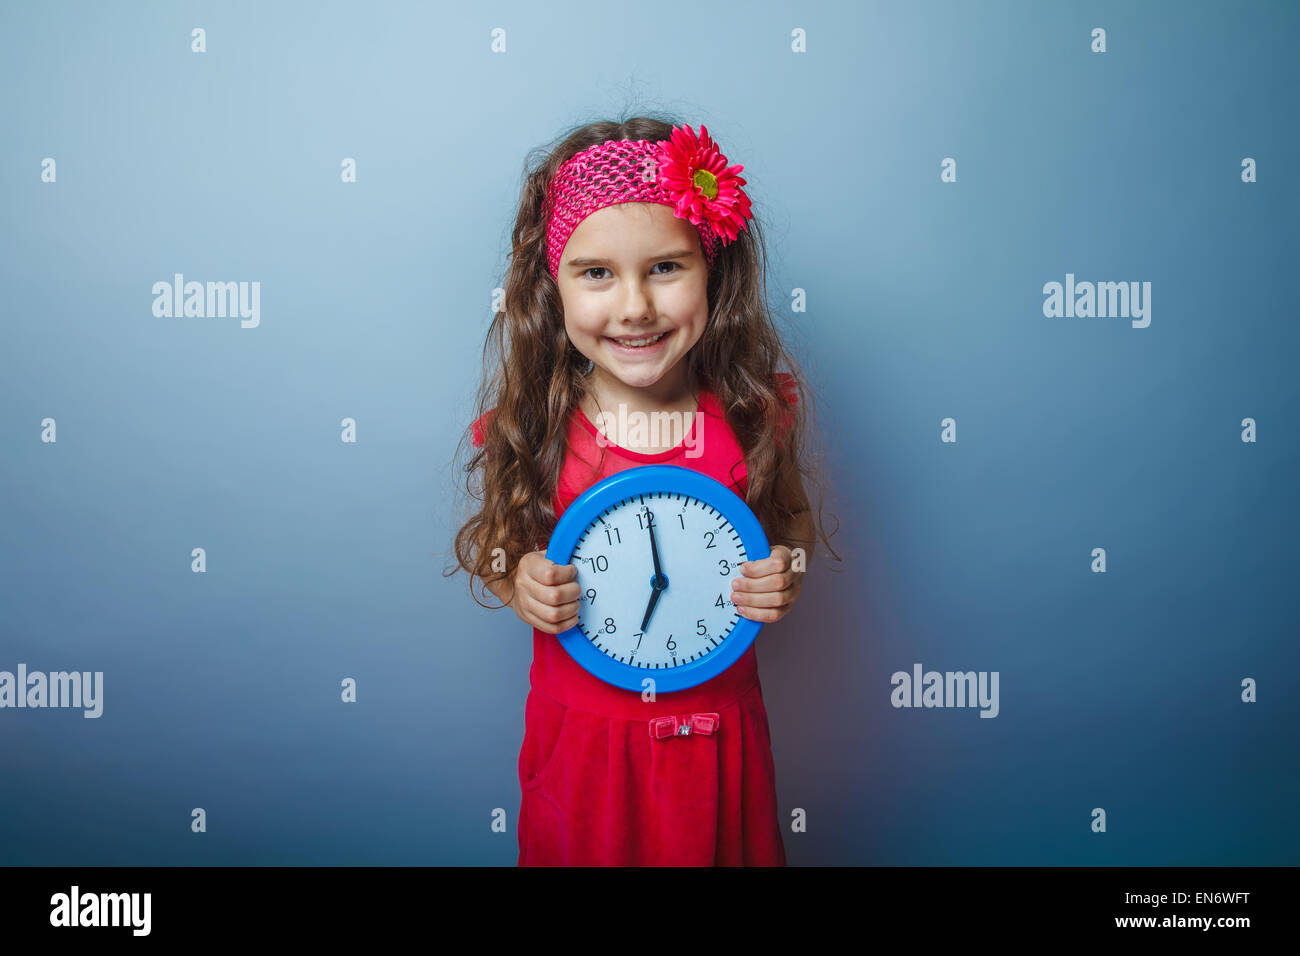 ein Mädchen von sieben europäischen Erscheinungsbild Rothaarige Kind mit einer hellen Haarnadel Stockfoto